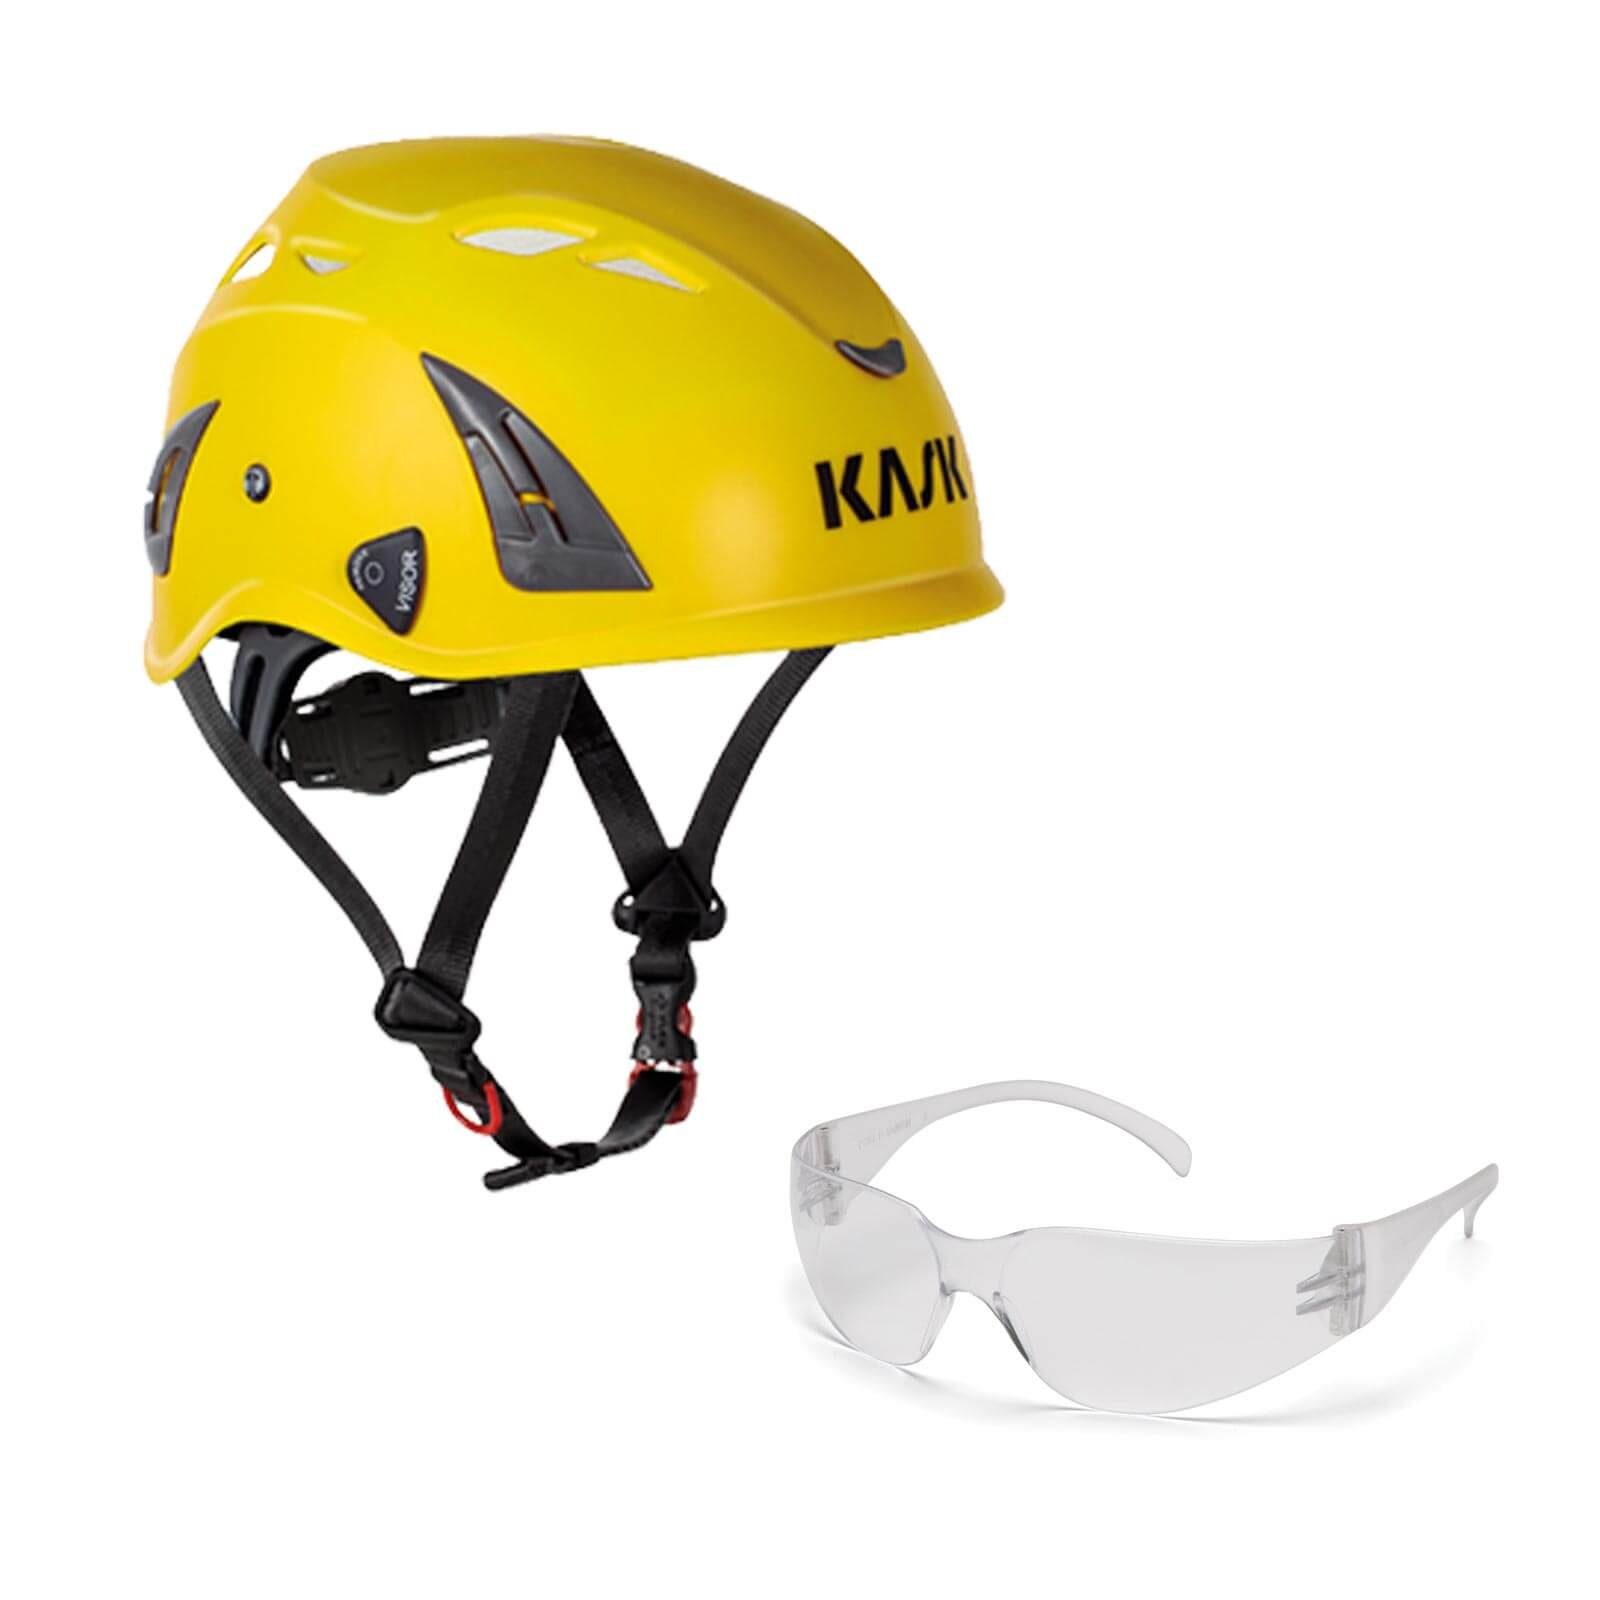 AQ Industriekletterhelm Plasma + Kask Bergsteigerhelm, Schutzhelm gelb klar Schutzbrille